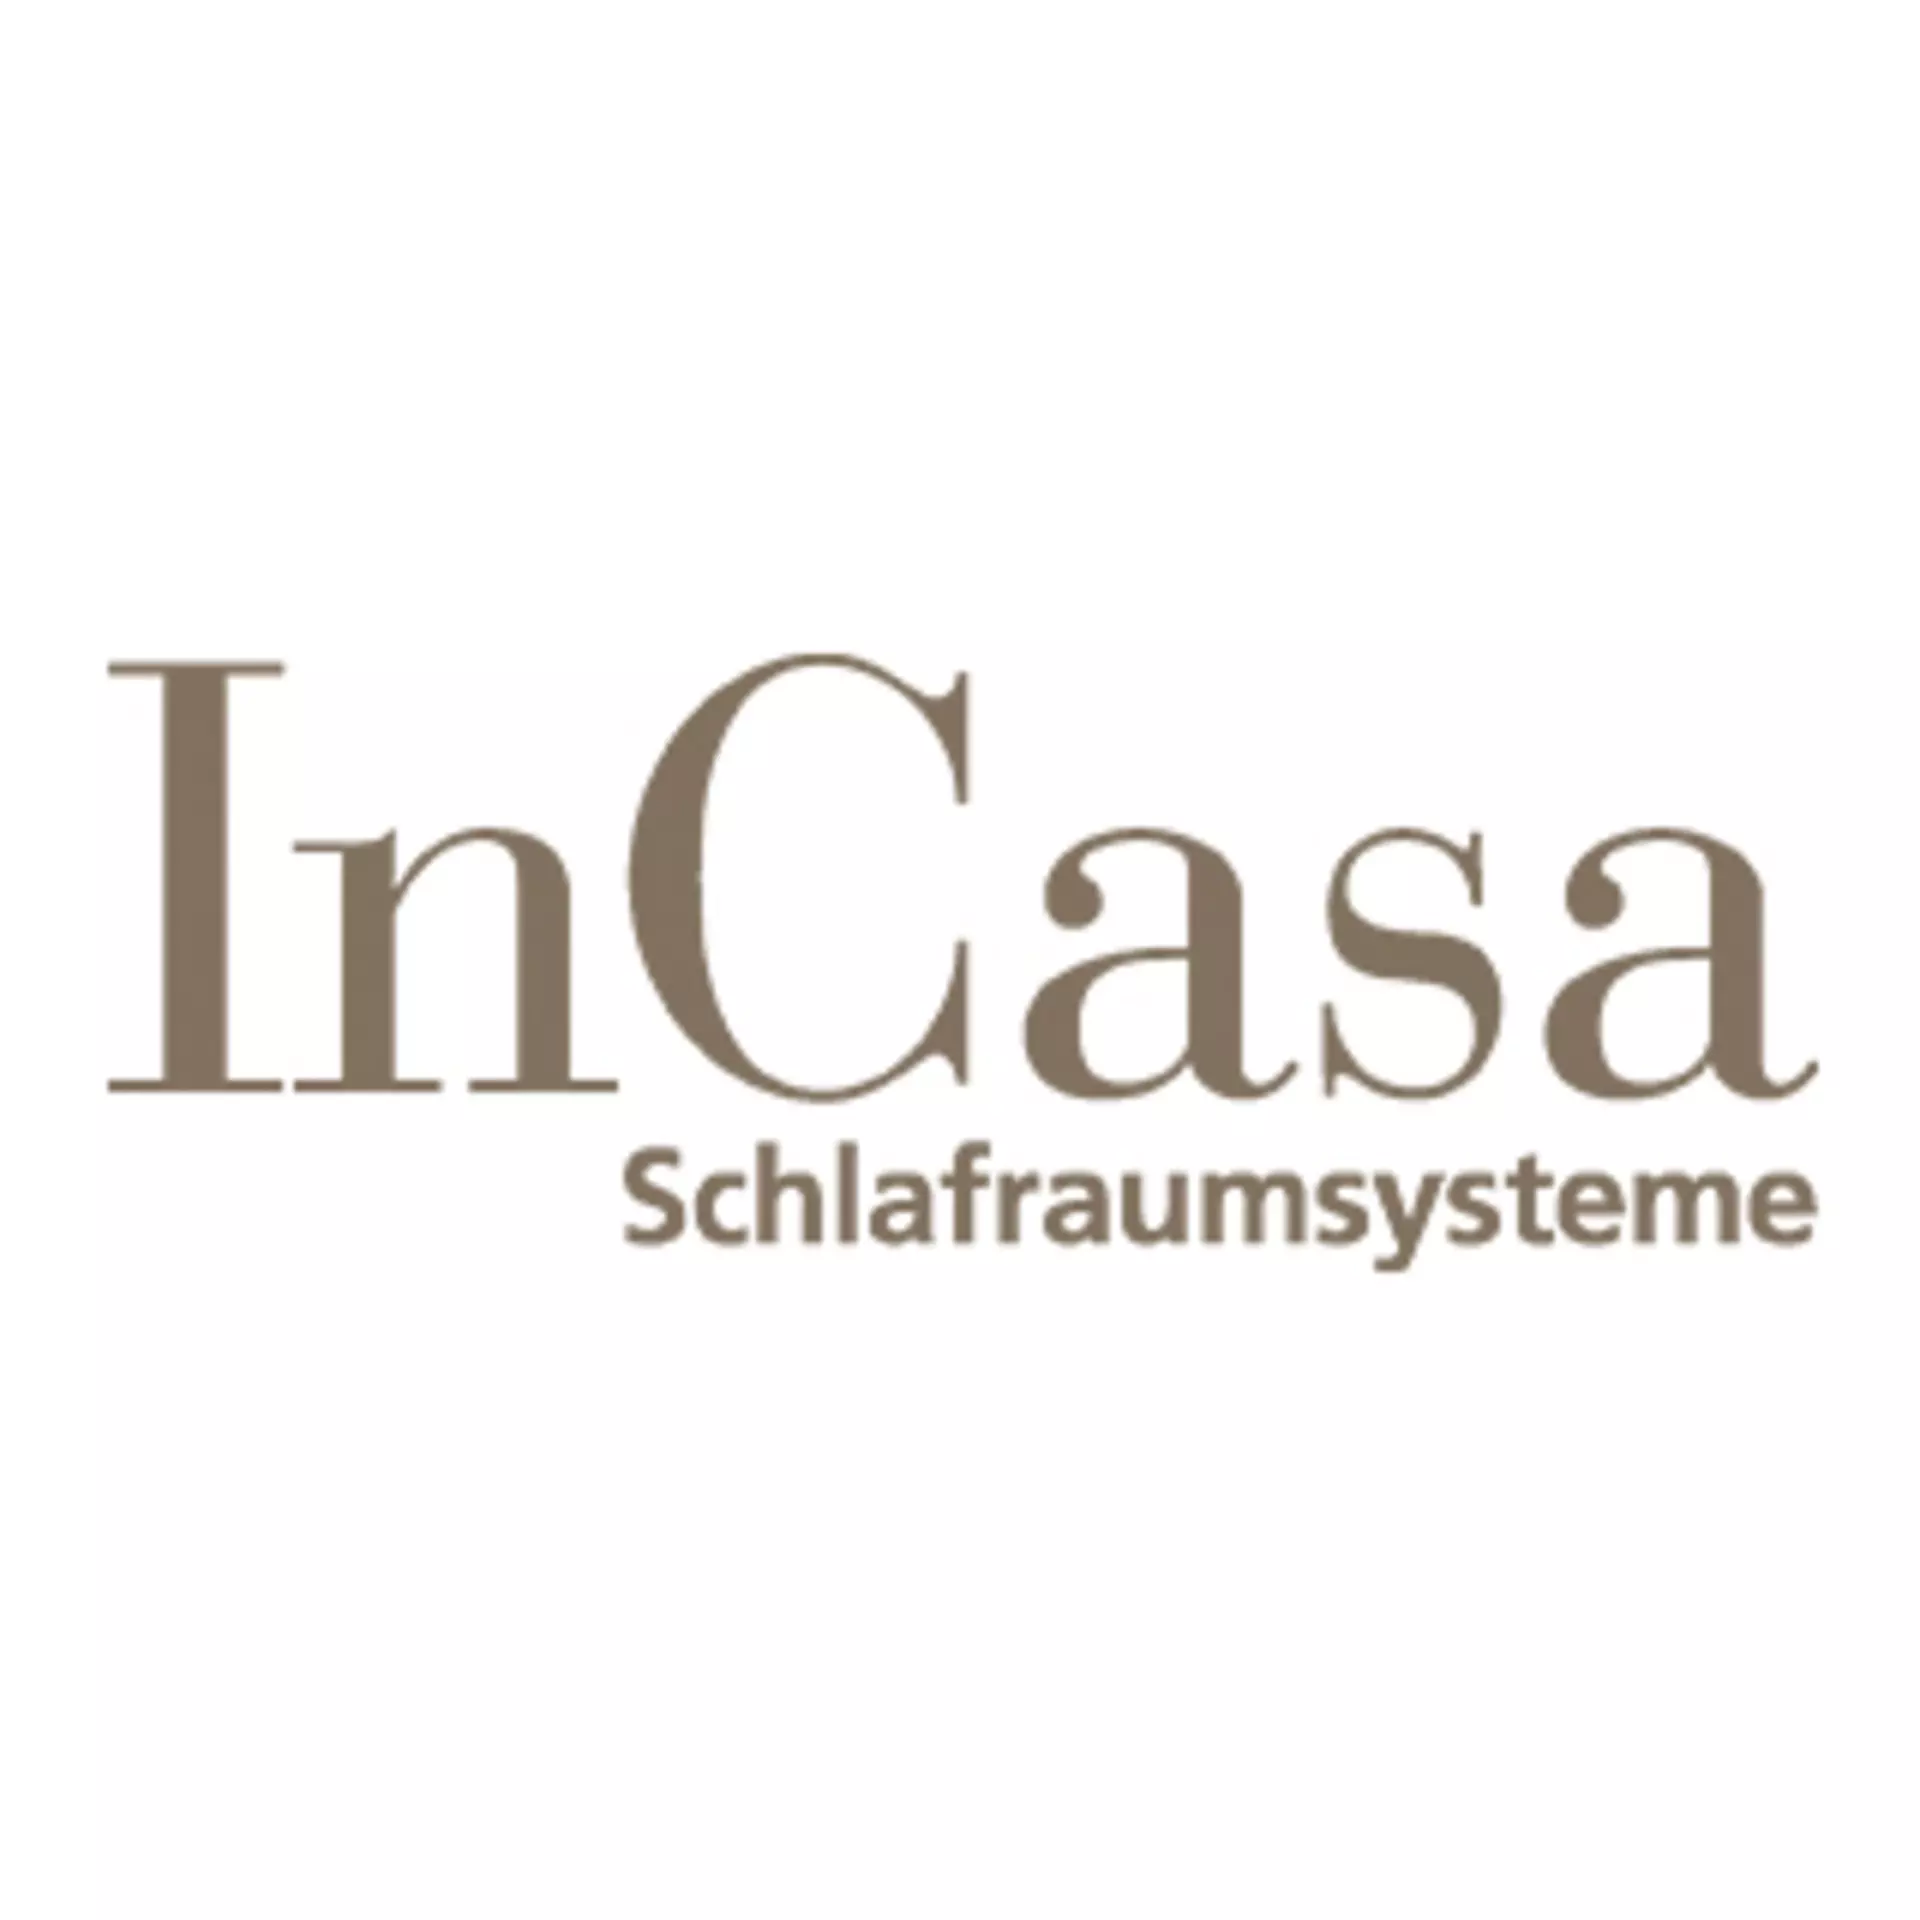 InCASA-Schlafraumsysteme bei Möbel Inhofer